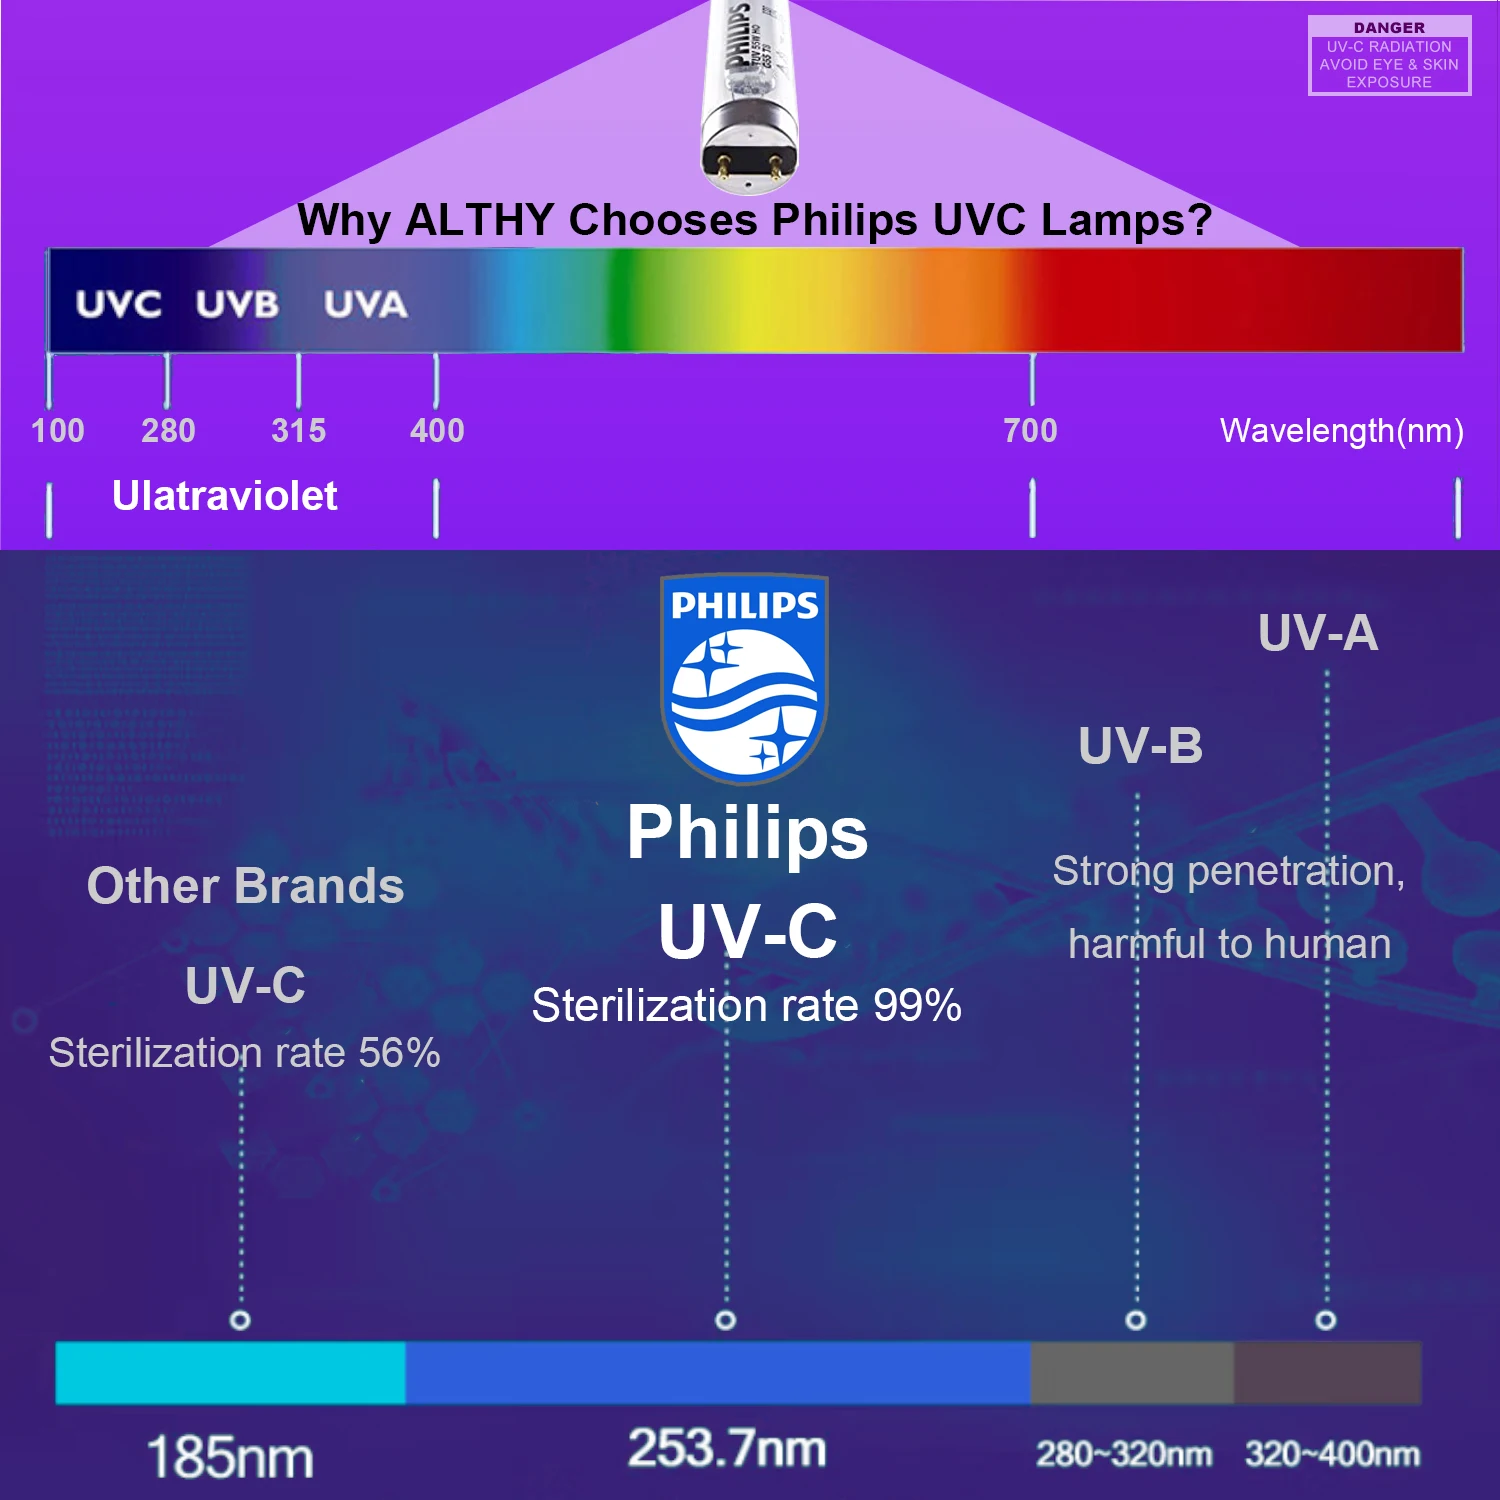 ALTHY UV Ultravioletti Acqua Sterilizzatore Depuratore Sistema di Disinfezione del Filtro FILIPPO Lampada + deviatore di Flusso di Controllo in Acciaio Inox 1GPM